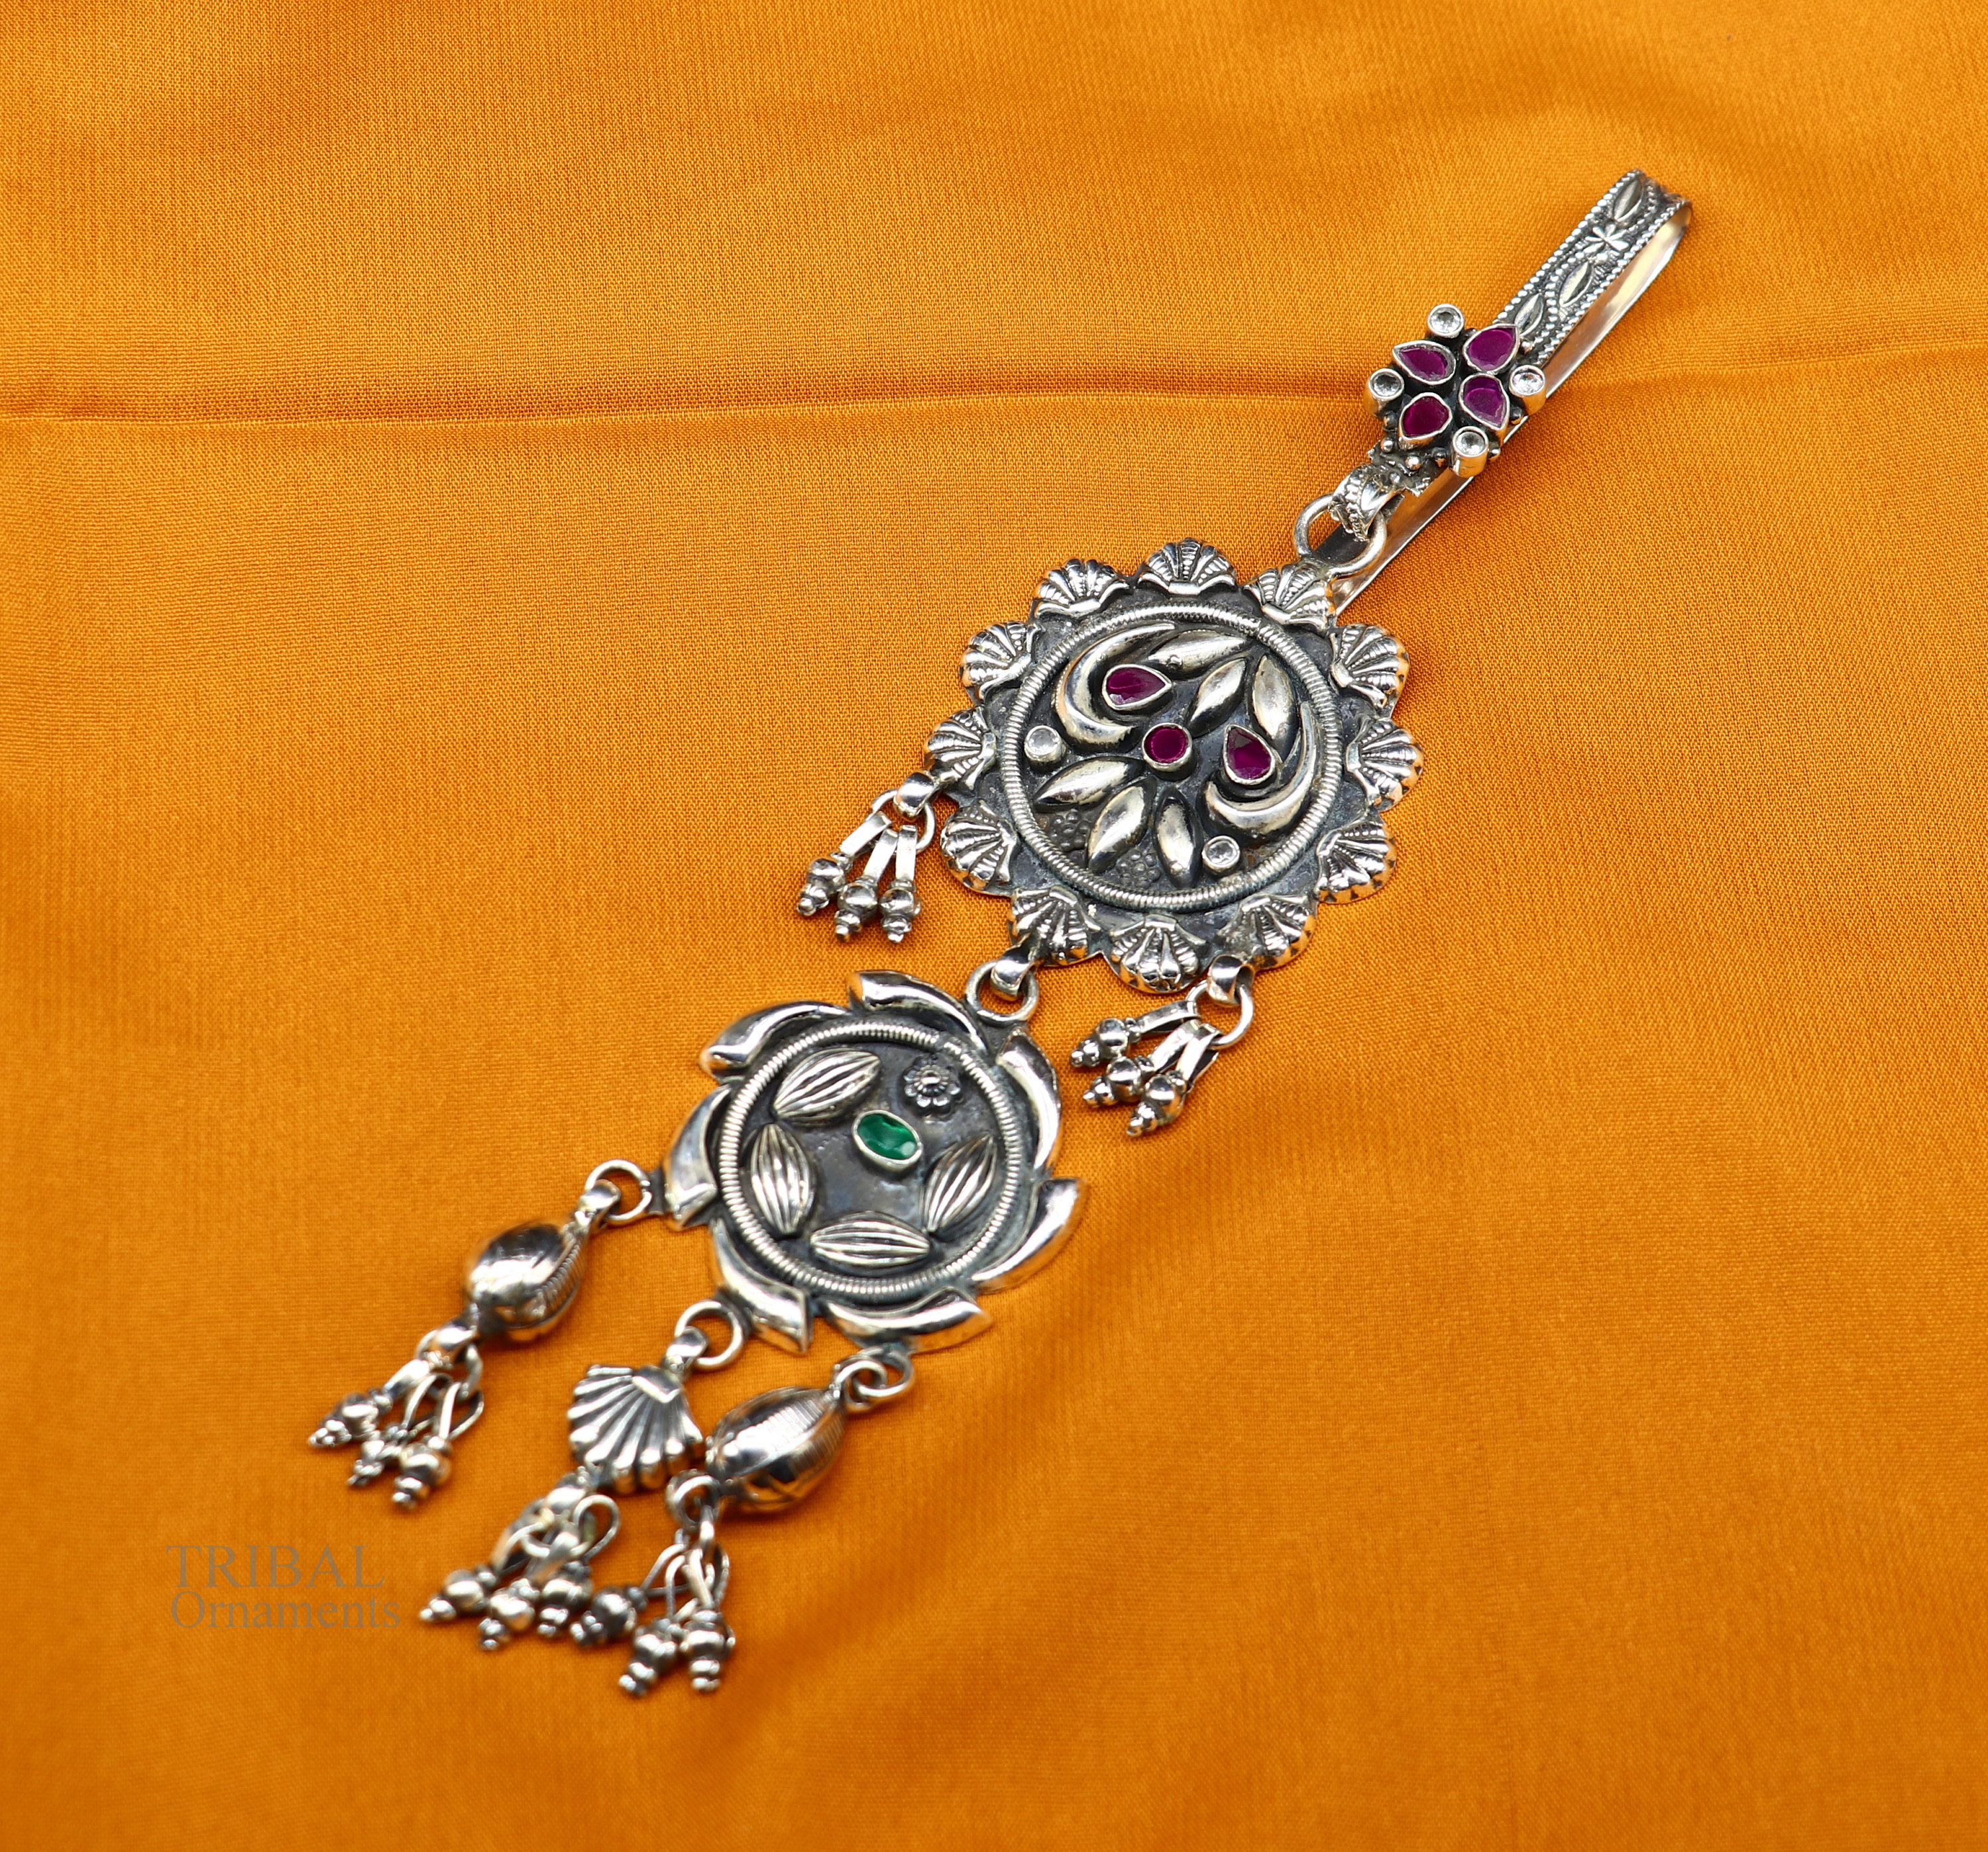 Boho Tassel Keychain, Tassel Purse Clip, Boho Key Chain, Sari Silk